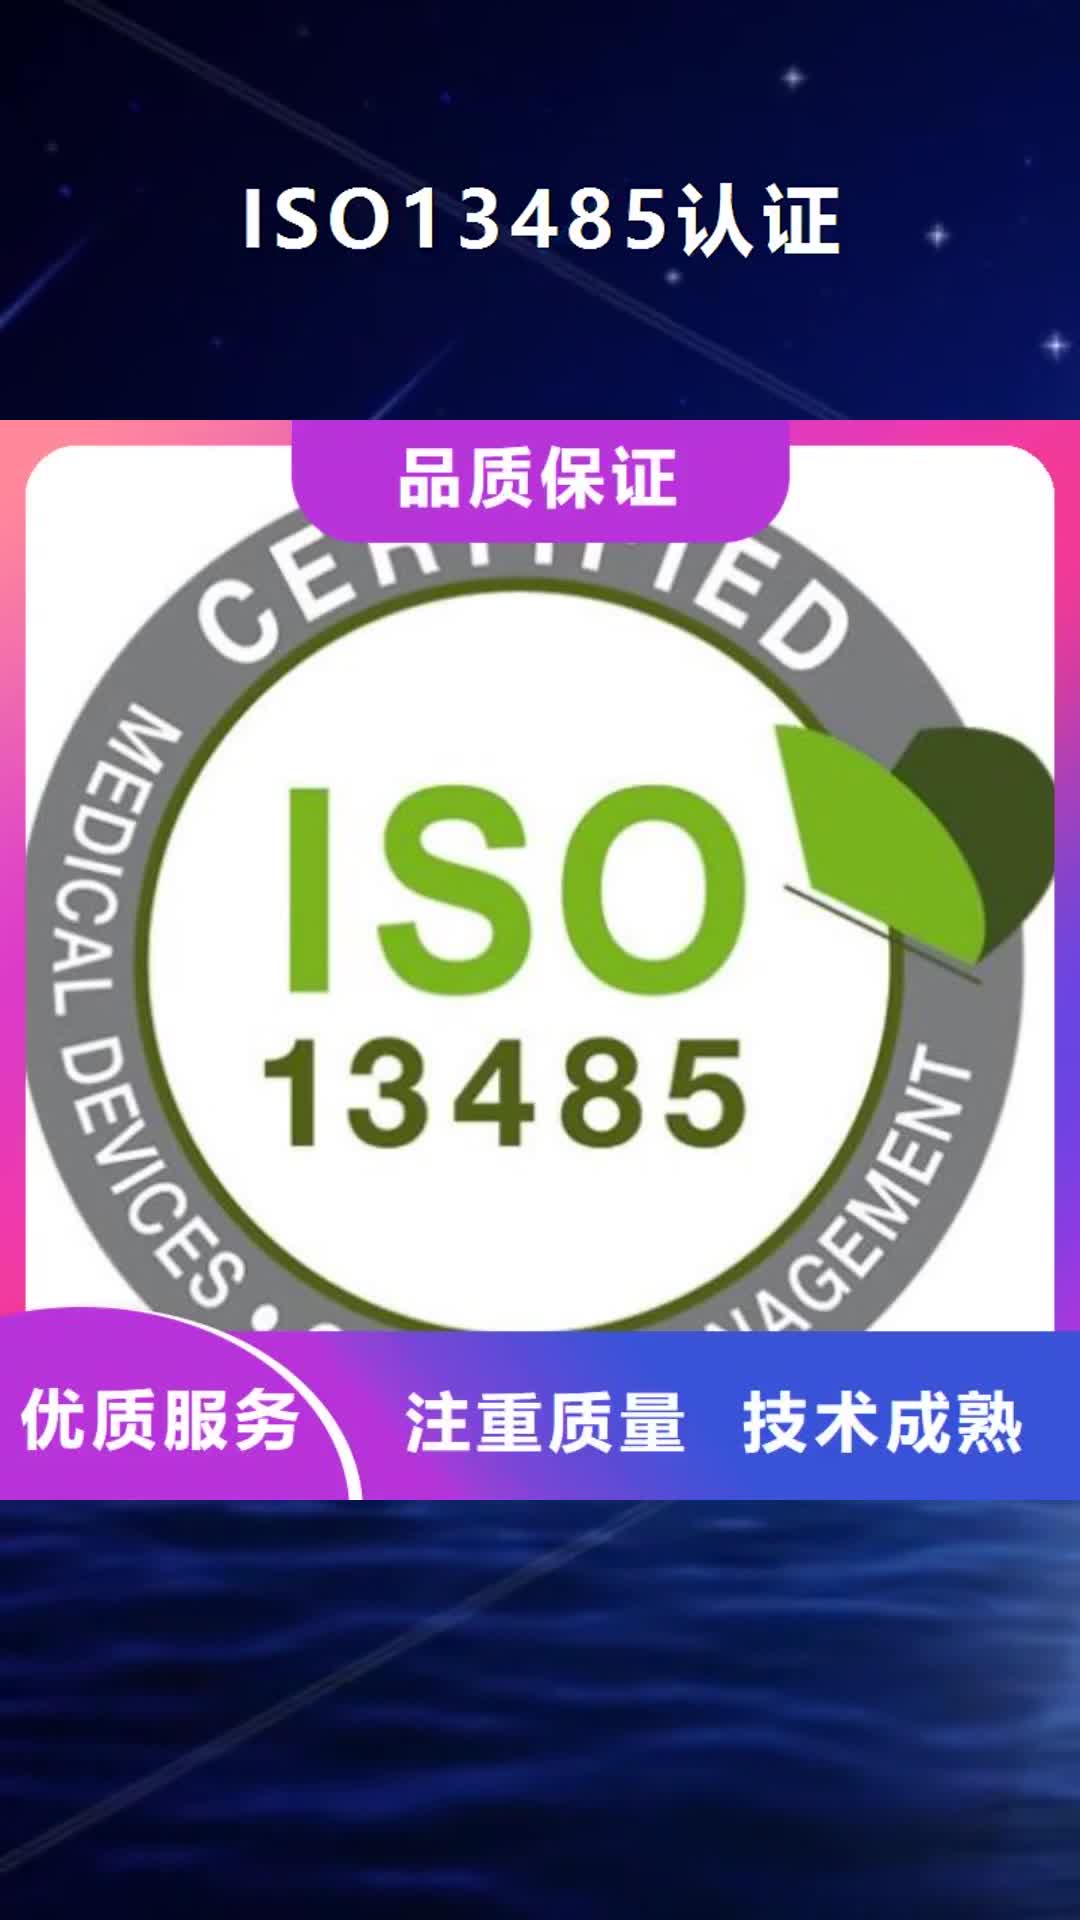 【海南 ISO13485认证,知识产权认证/GB29490资质齐全】